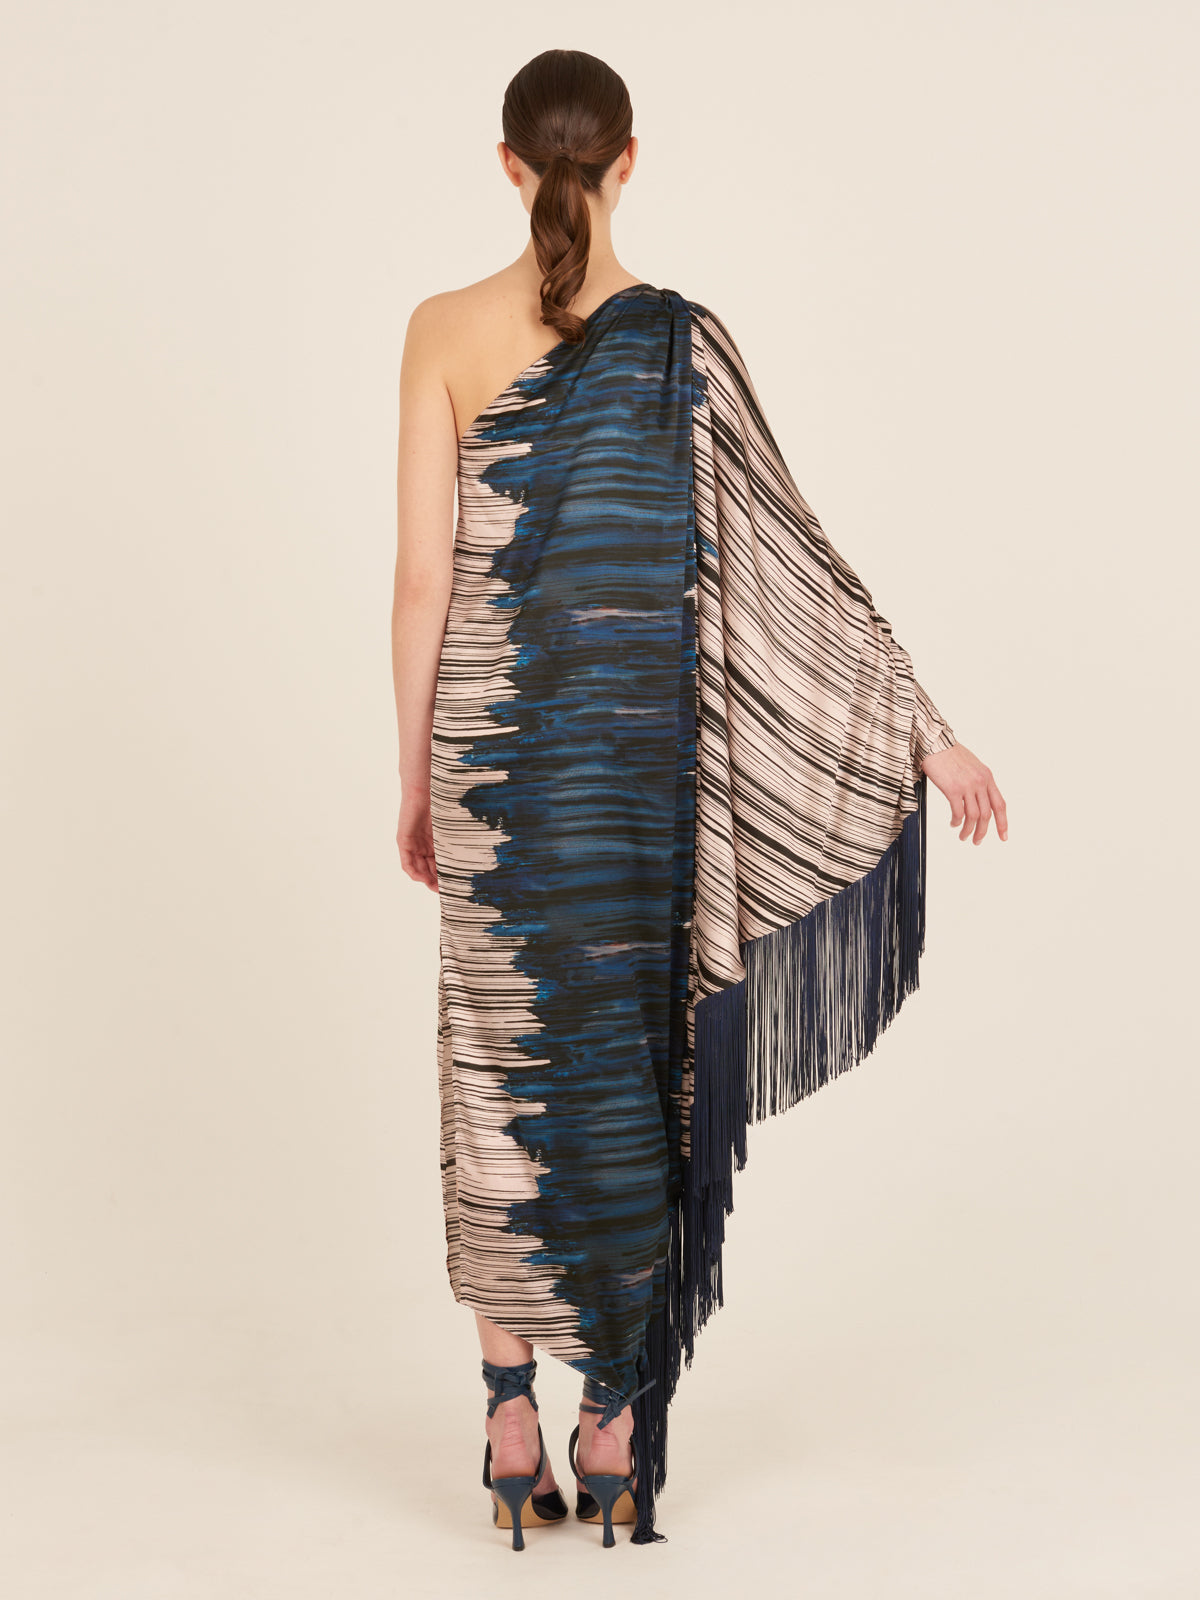 Alana Dress Indigo Linear